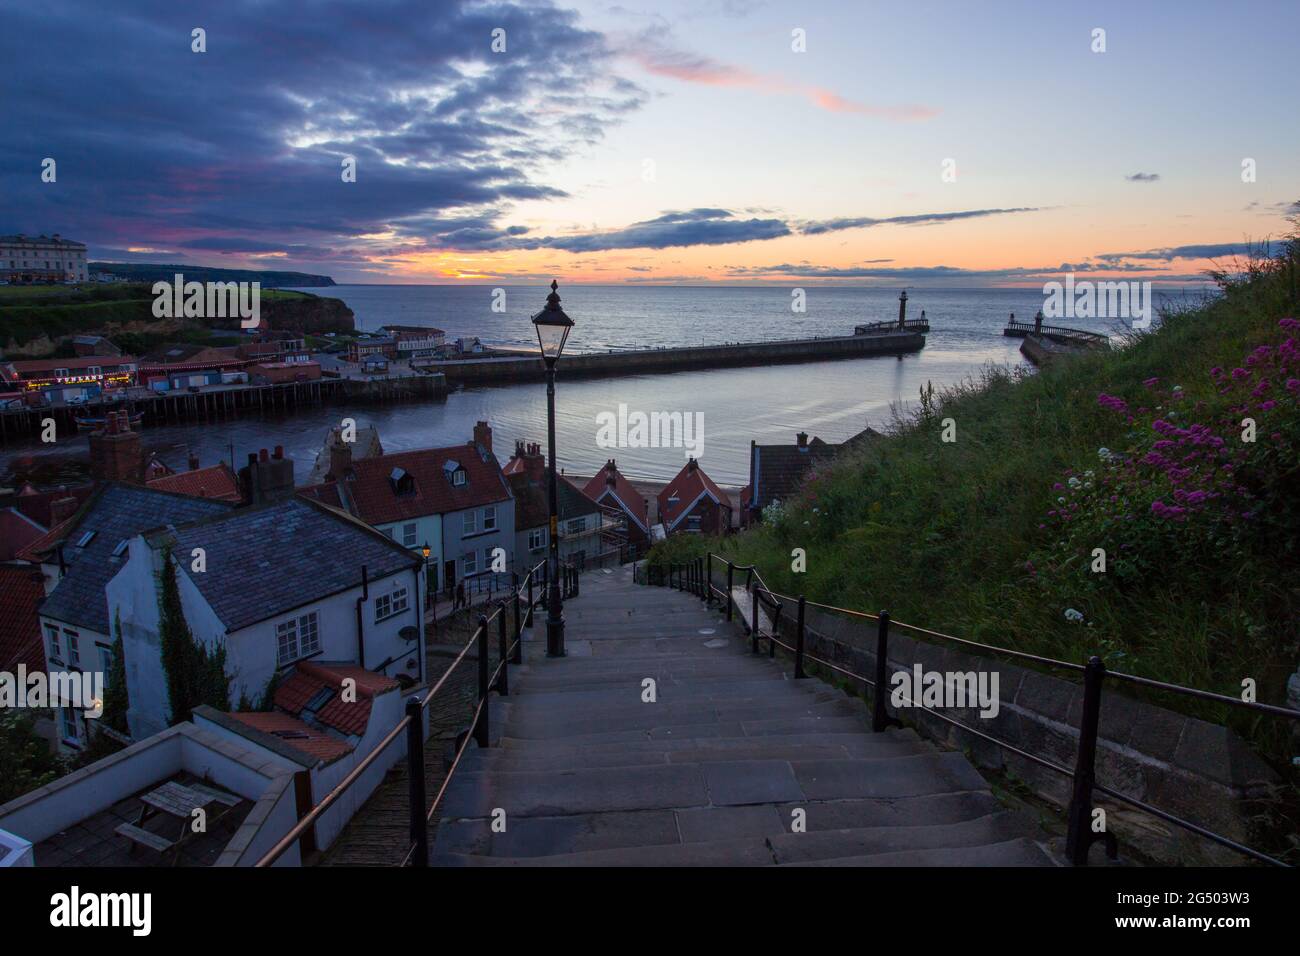 199 scalini che conducono dall'abbazia fino al porto di Whitby. Colori caldi nel cielo al tramonto. Destinazione turistica dello Yorkshire Foto Stock